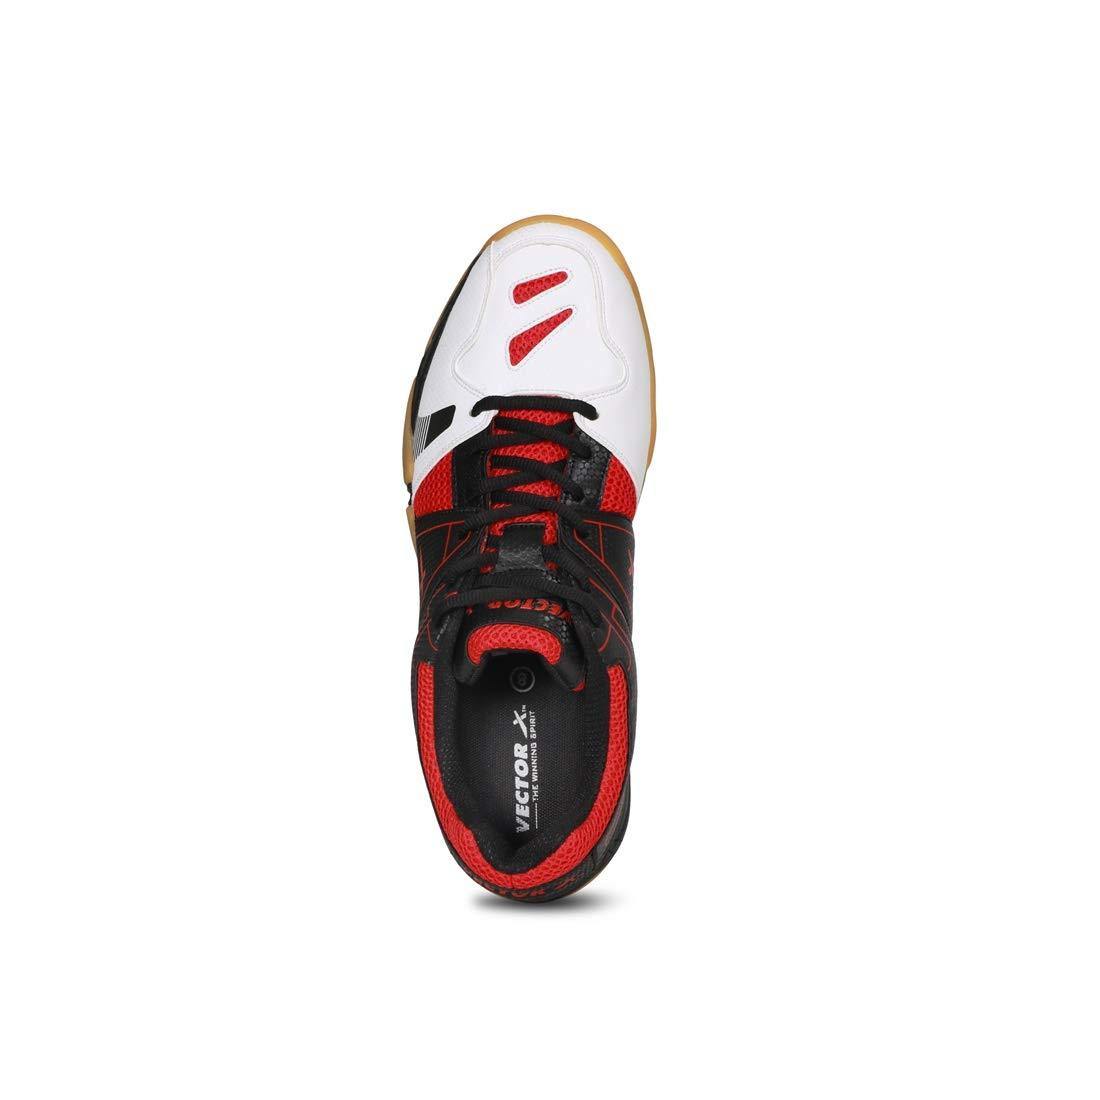 Vector X CS-2040 Court Shoes White-Black - Best Price online Prokicksports.com